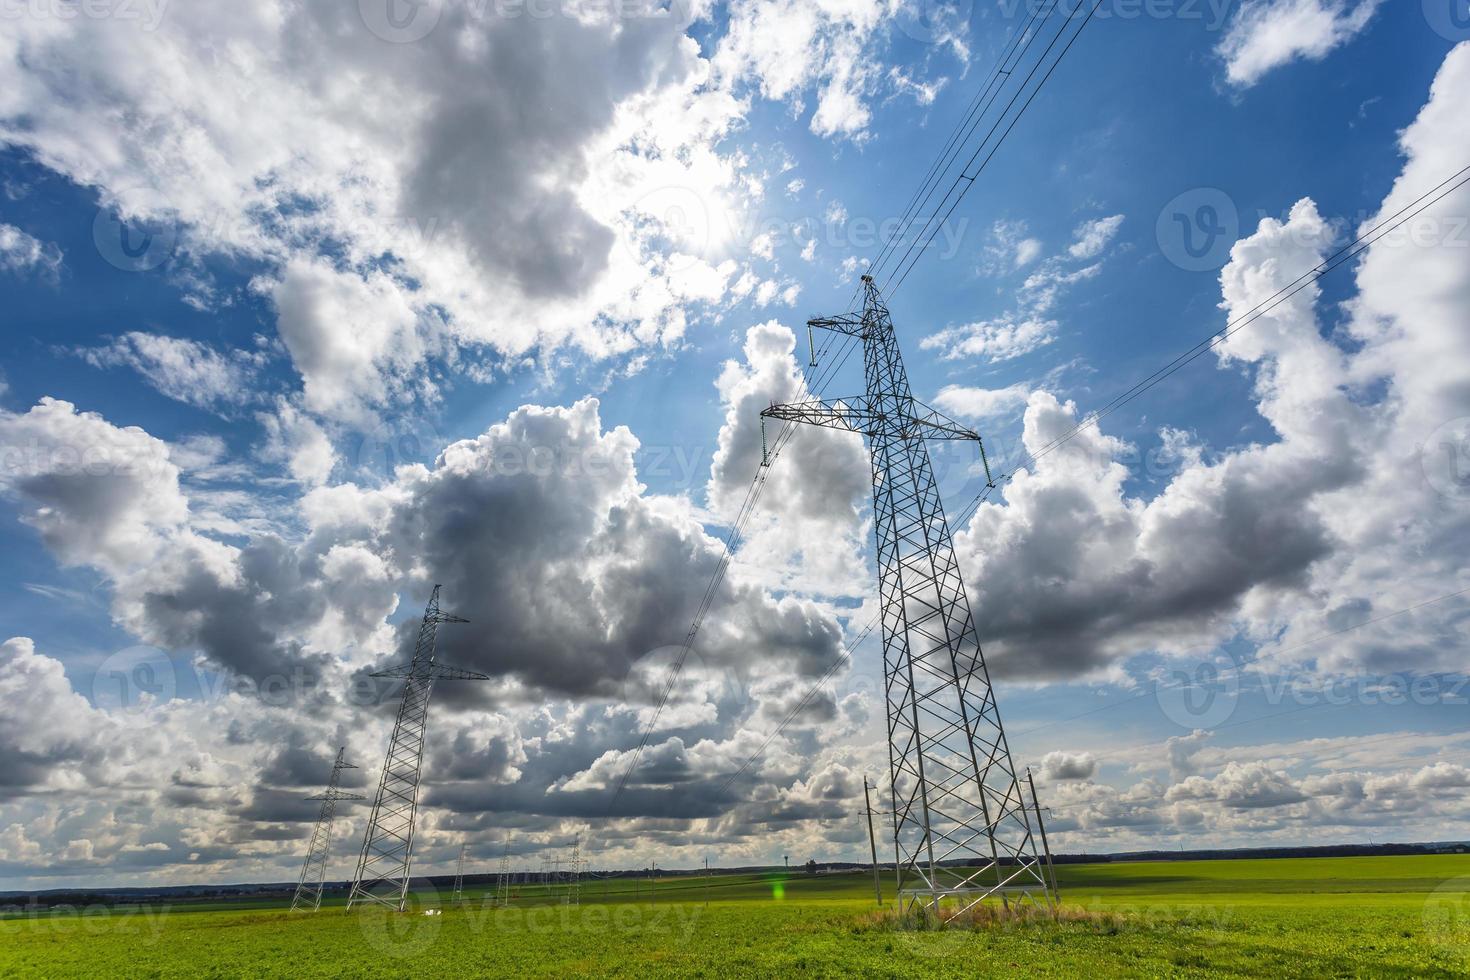 silhouette des pylônes électriques à haute tension sur fond de beaux nuages photo